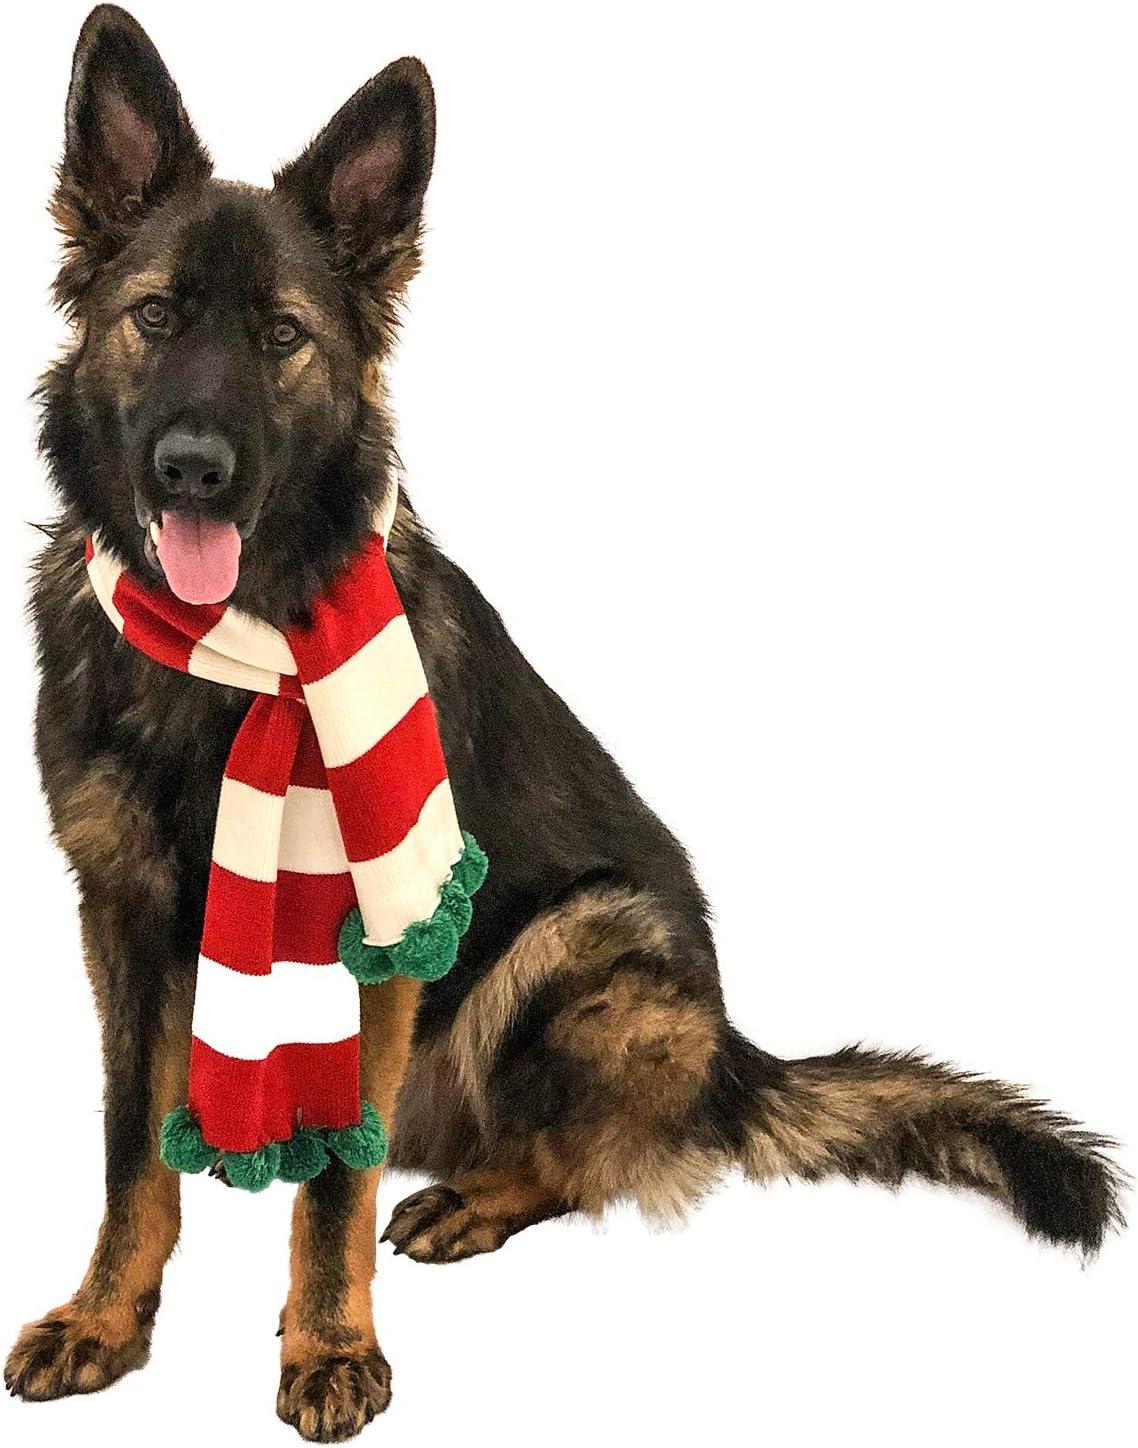 Midlee Christmas Striped Dog Scarf- Red/White & Green Pom Pom